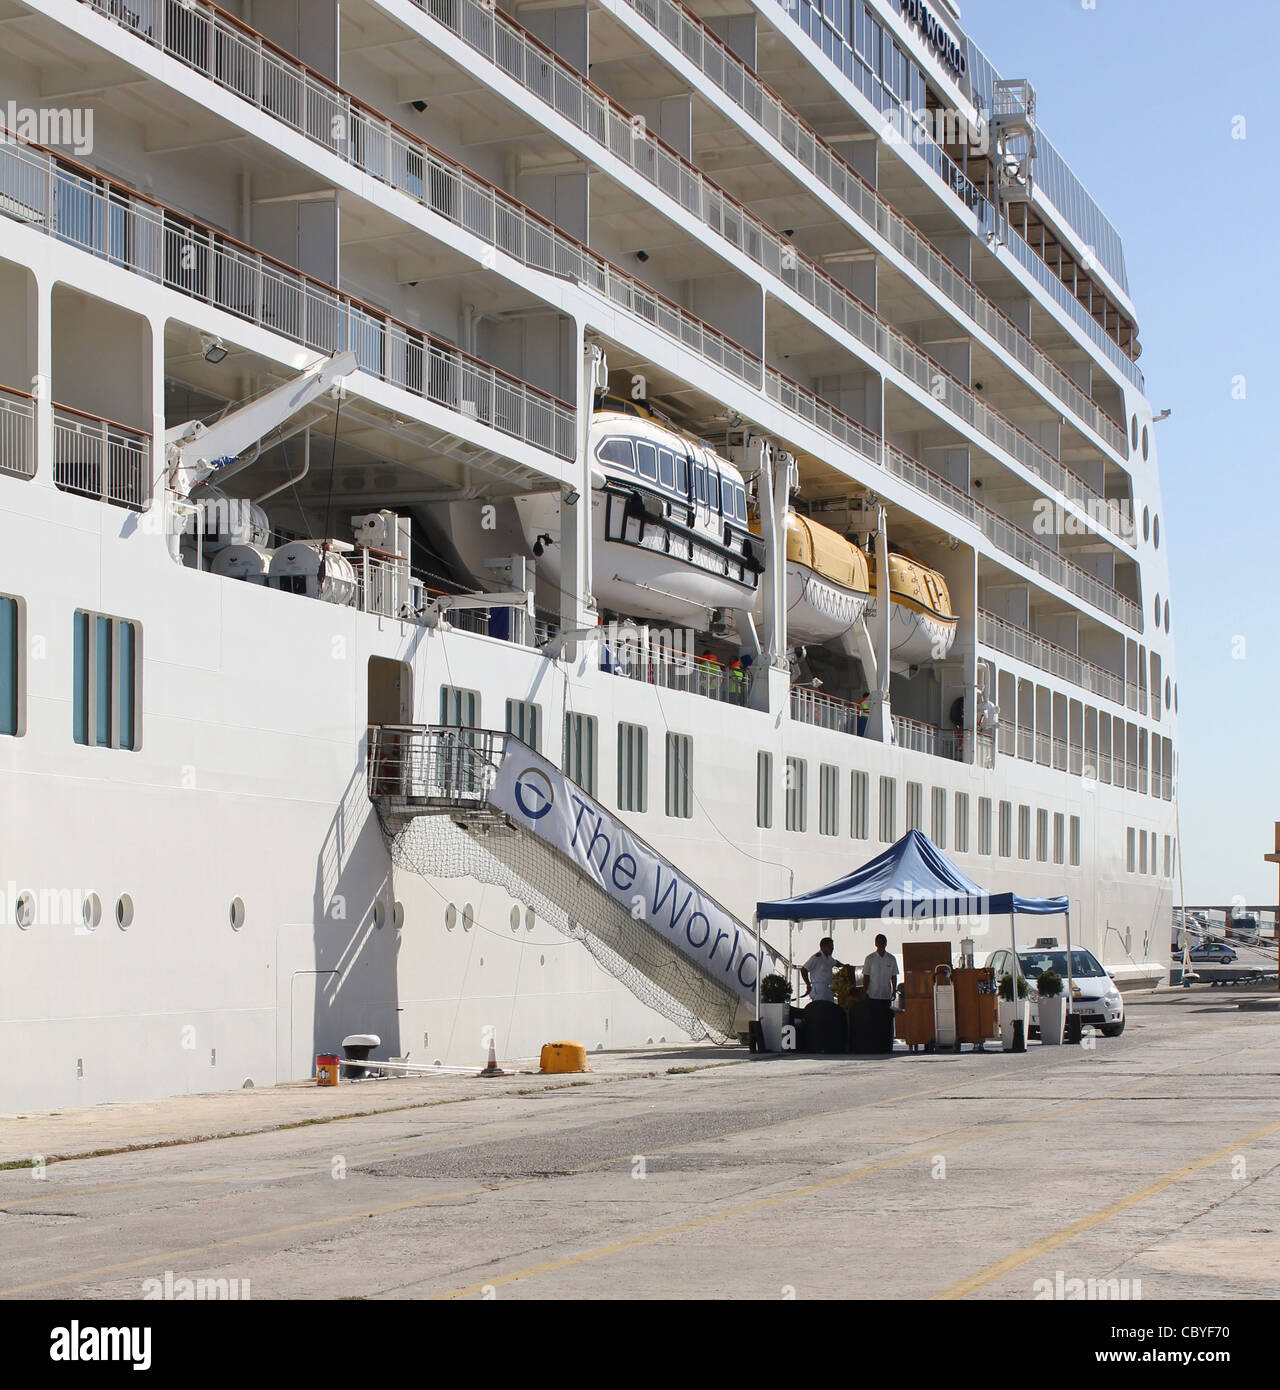 Apartamento flotante el bloque 'el mundo' durante una visita al puerto de Palma de Mallorca, Islas Baleares, España. Foto de stock